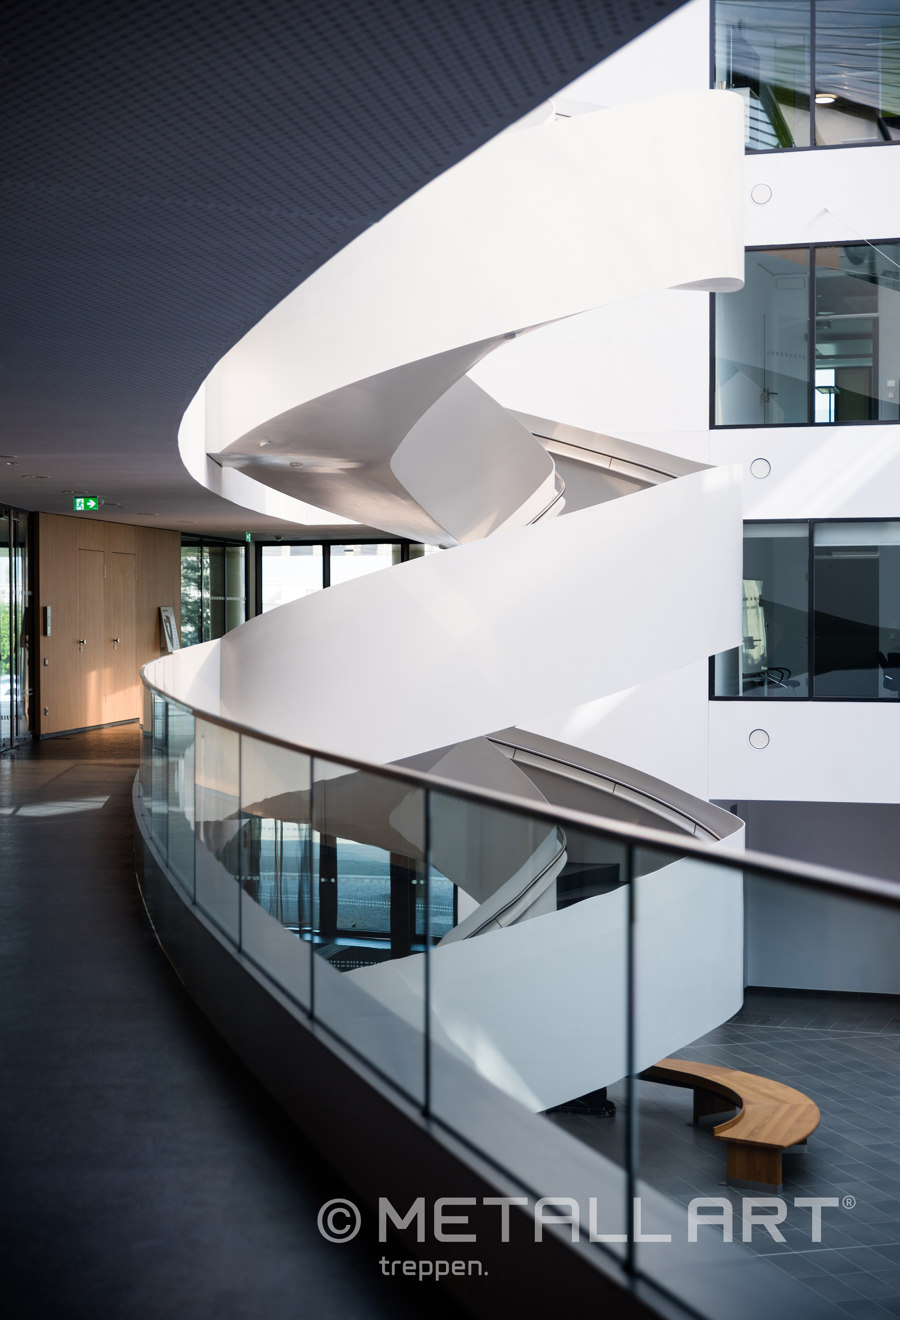 Eindrucksvolle Designtreppe im Lilienthalhaus Braunschweig de MetallArt Treppen | Références des fabricantes